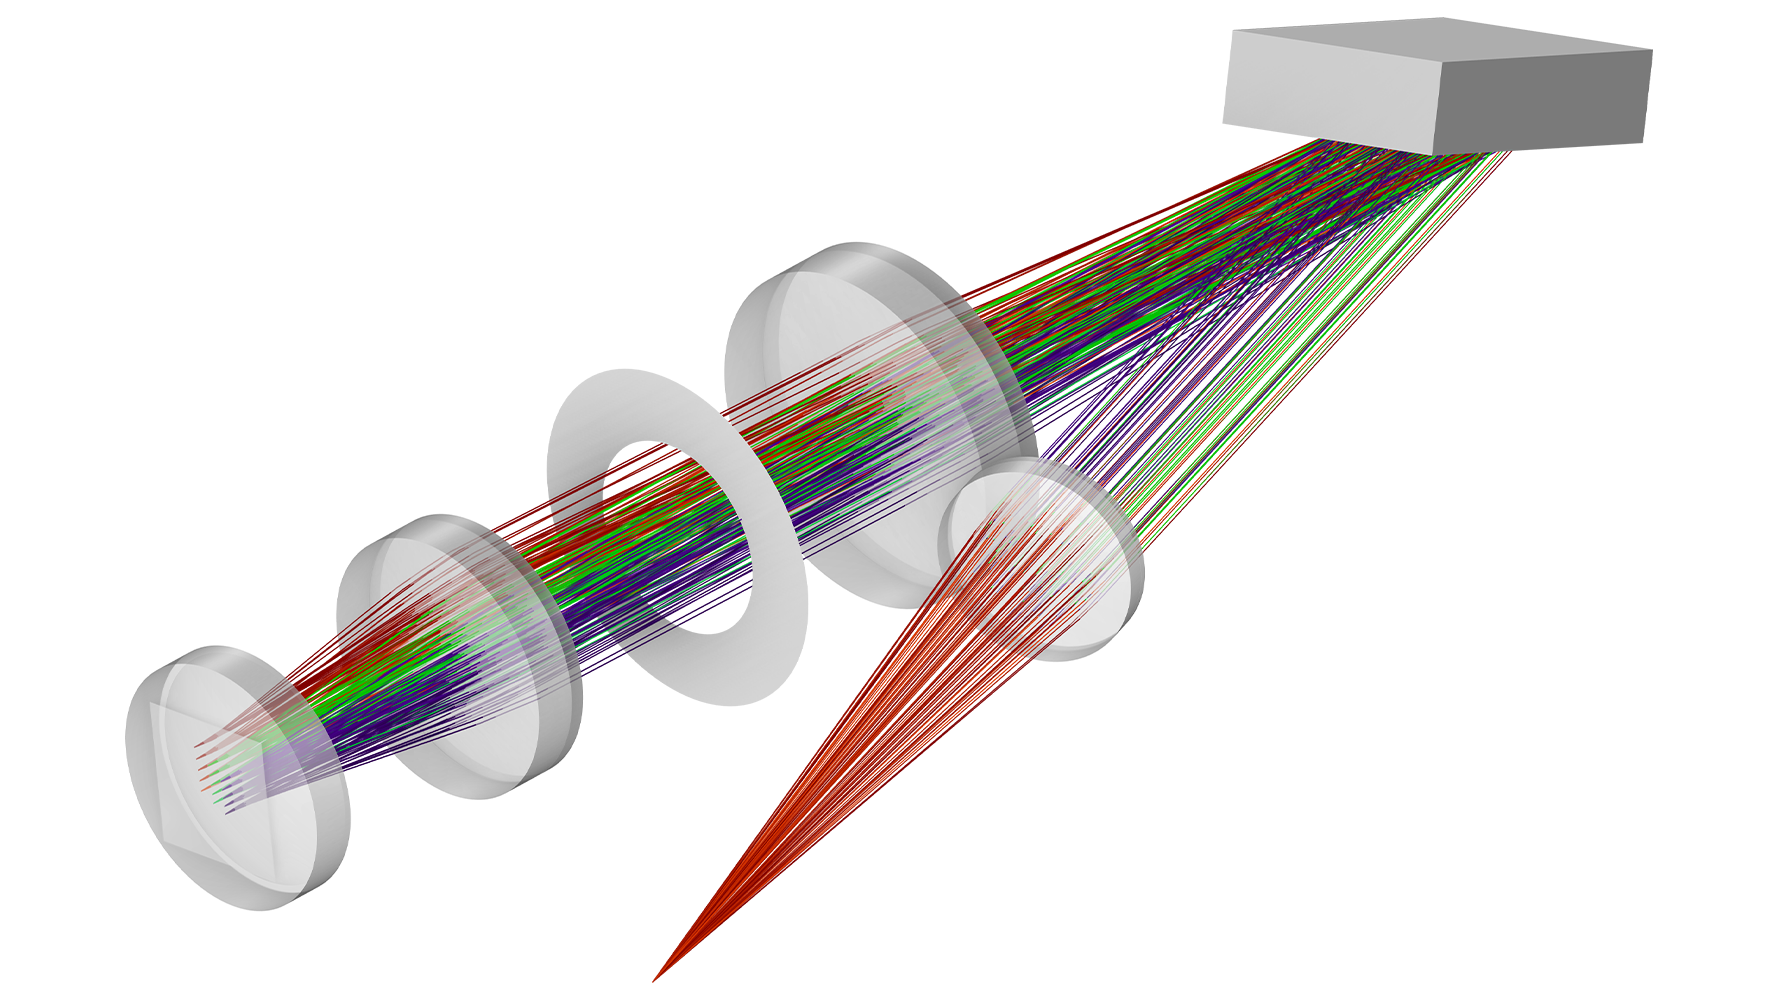 赤, 緑, 青の光線図を示す分光器モデル.